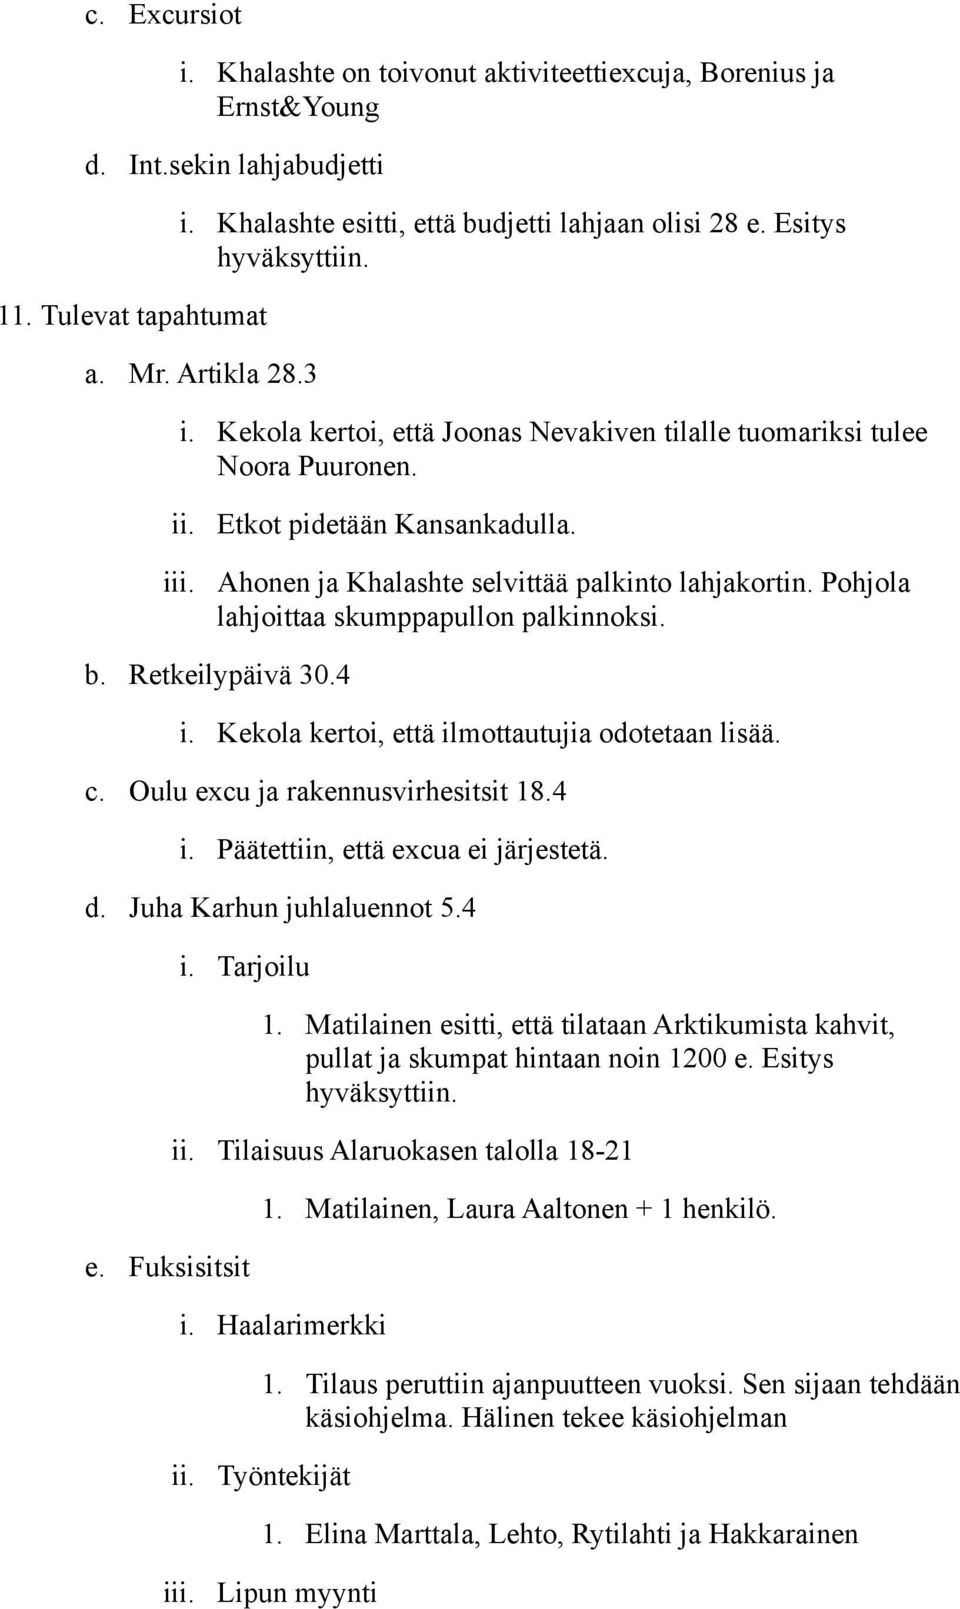 Pohjola lahjoittaa skumppapullon palkinnoksi. b. Retkeilypäivä 30.4 i. Kekola kertoi, että ilmottautujia odotetaan lisää. c. Oulu excu ja rakennusvirhesitsit 18.4 i. Päätettiin, että excua ei järjestetä.